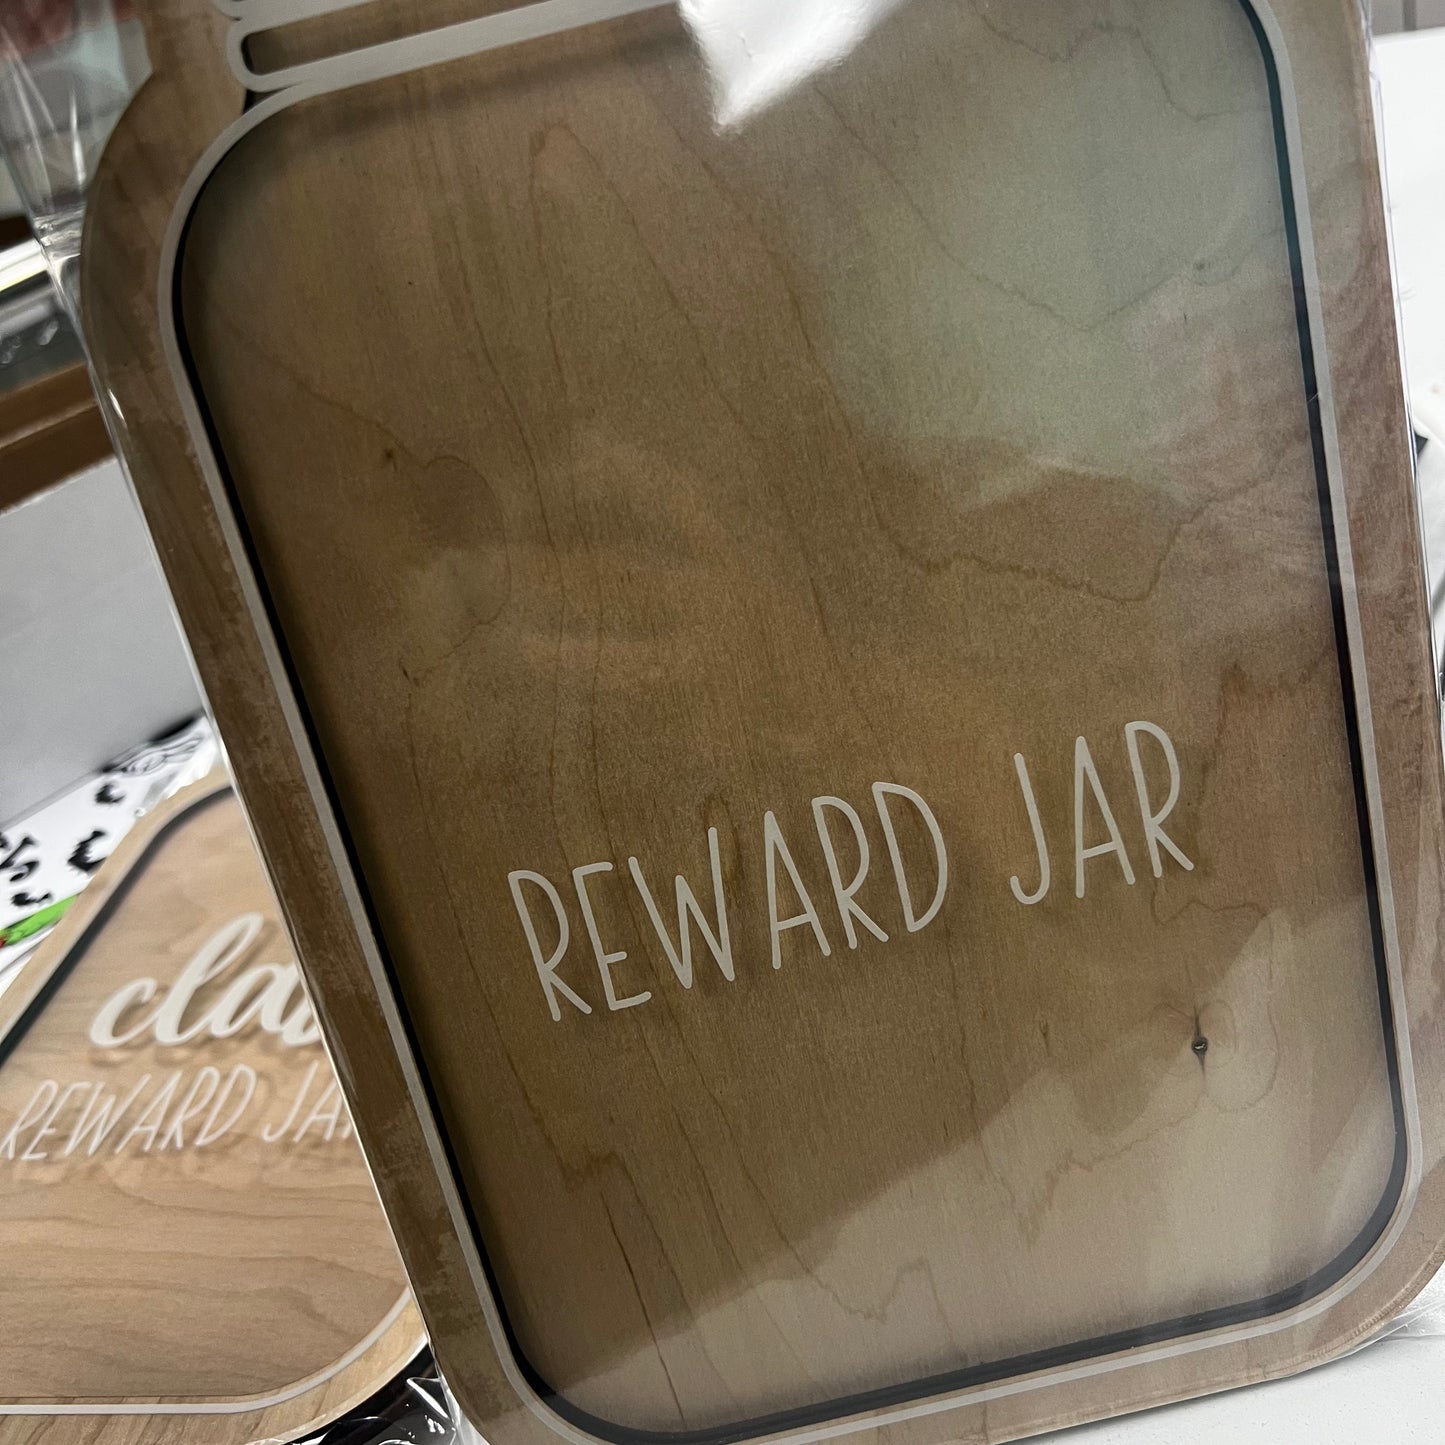 Reward Jar - 11x7in